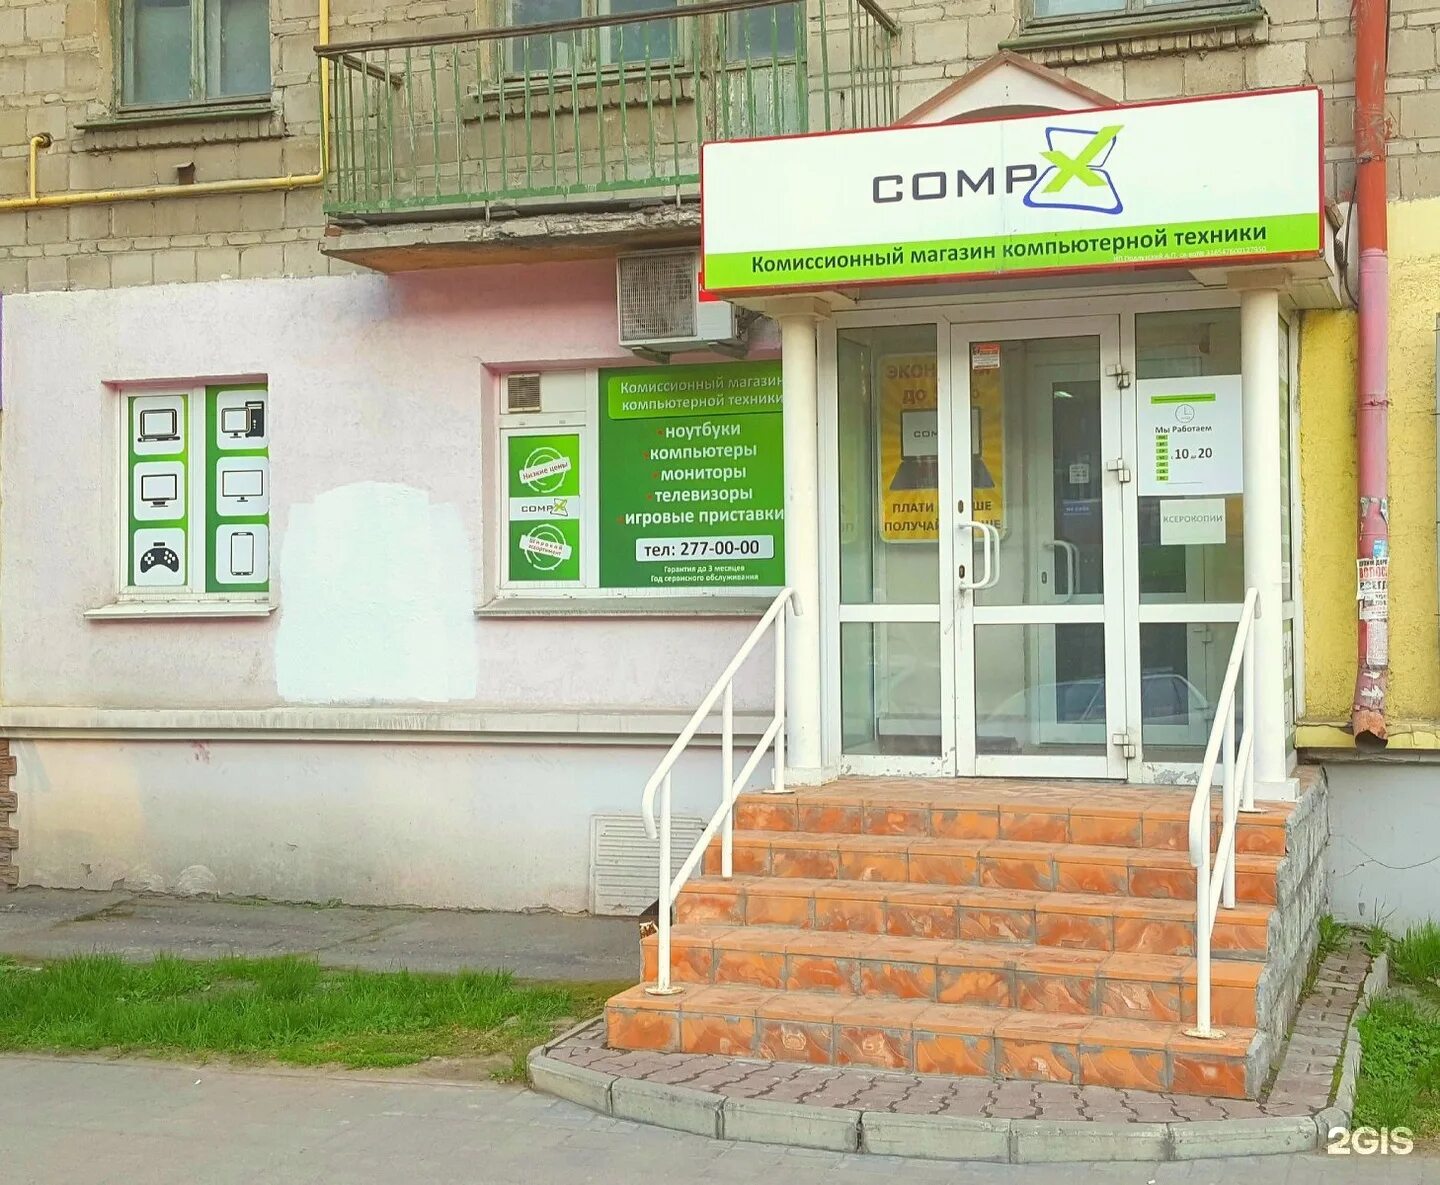 Комиссионный магазин на проспекте. Комиссионный магазин техники. Комиссионный магазин компьютерной техники. Комиссионка Новосибирск.